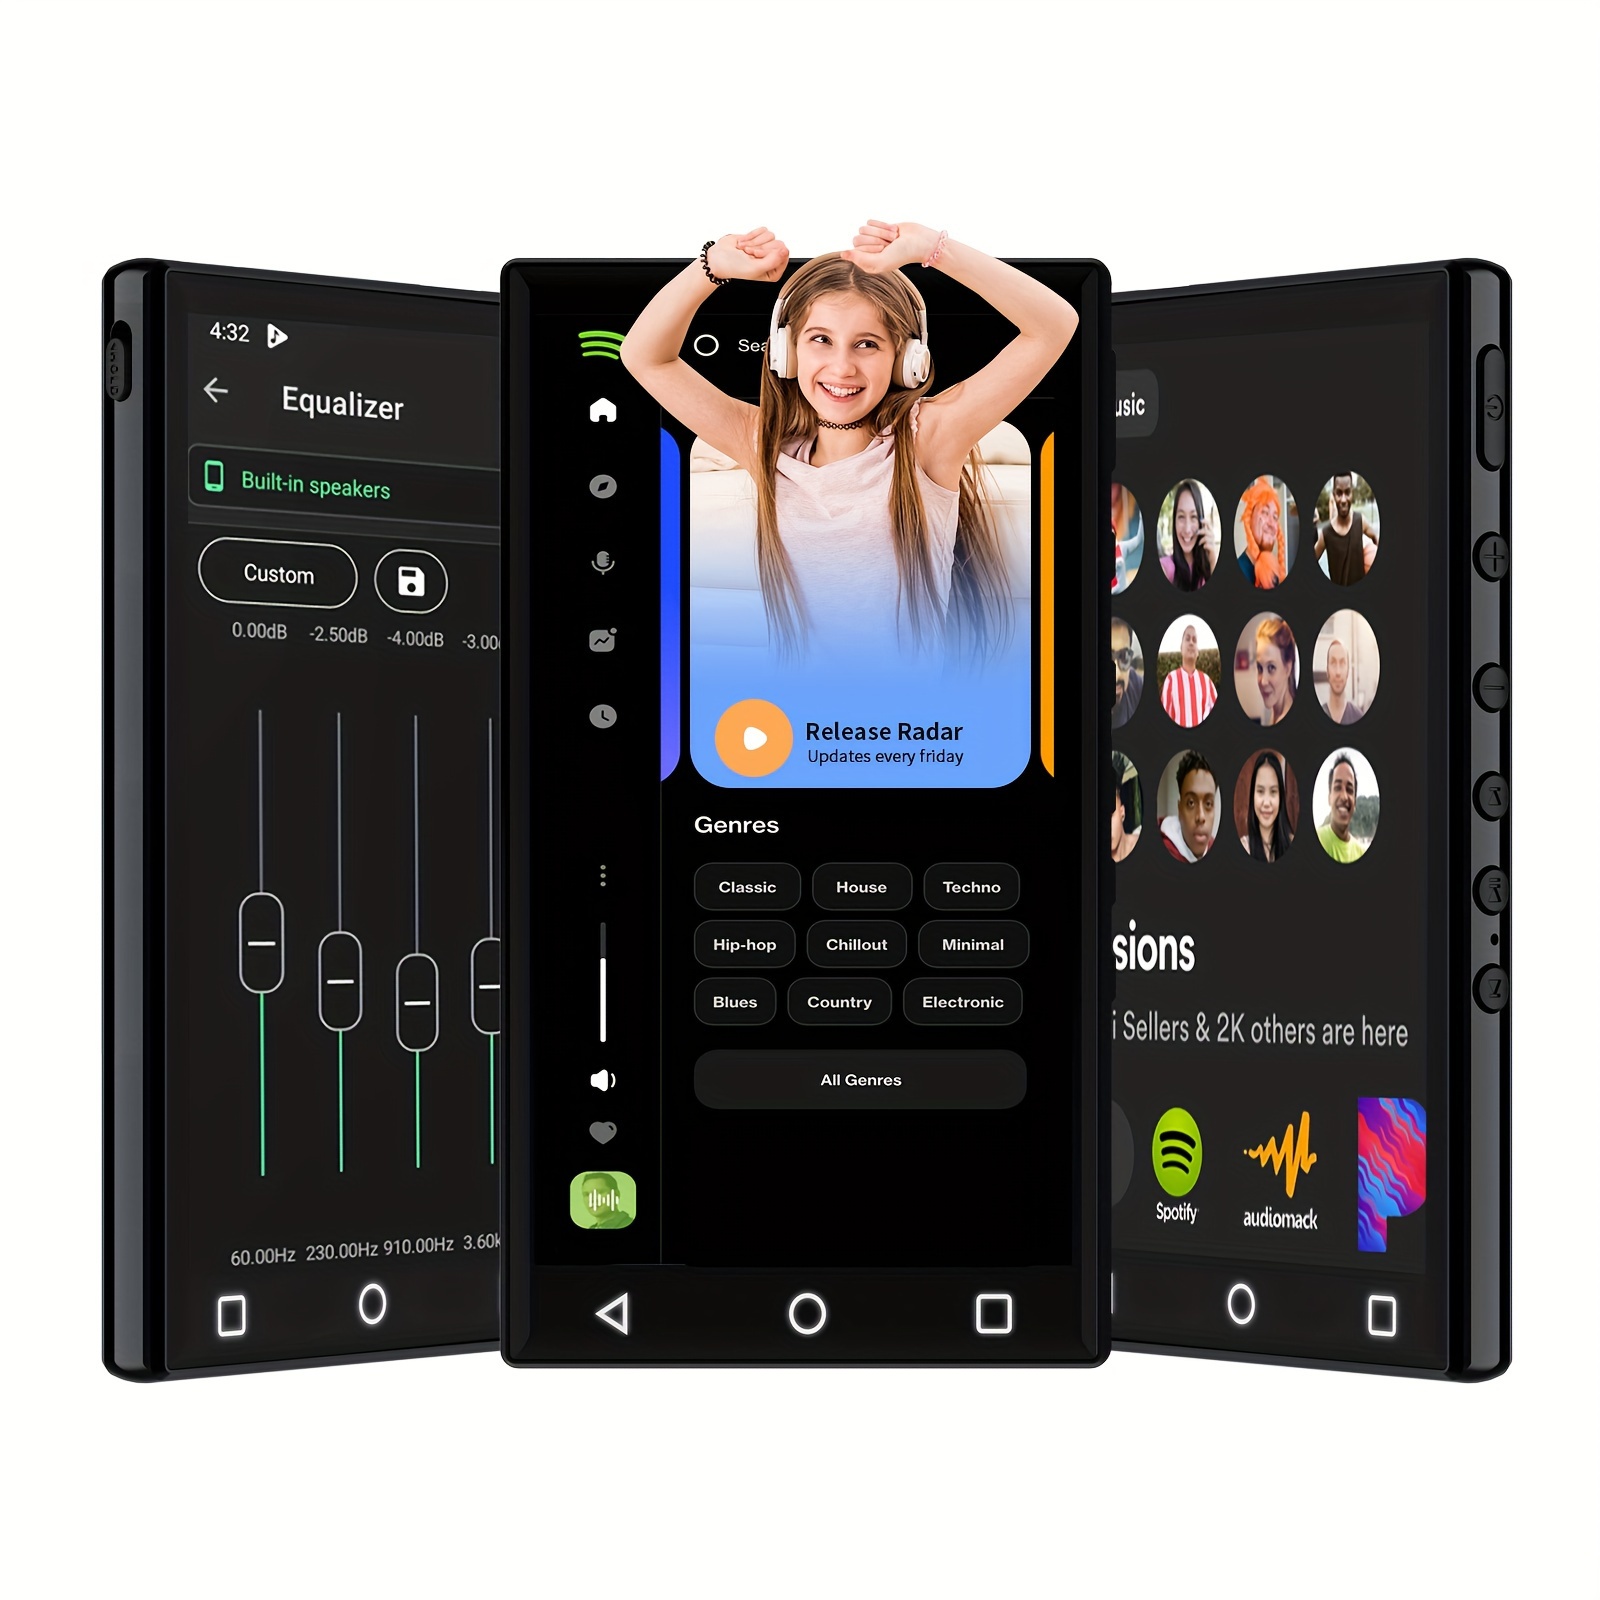 (16+128)GB Reproductor De MP3 Android9.0 Con Wireless 5.1 Y WiFi,  Reproductor De MP4 De Pantalla Táctil Completa De 4.3 1080P Con Spotify,  Reproducto